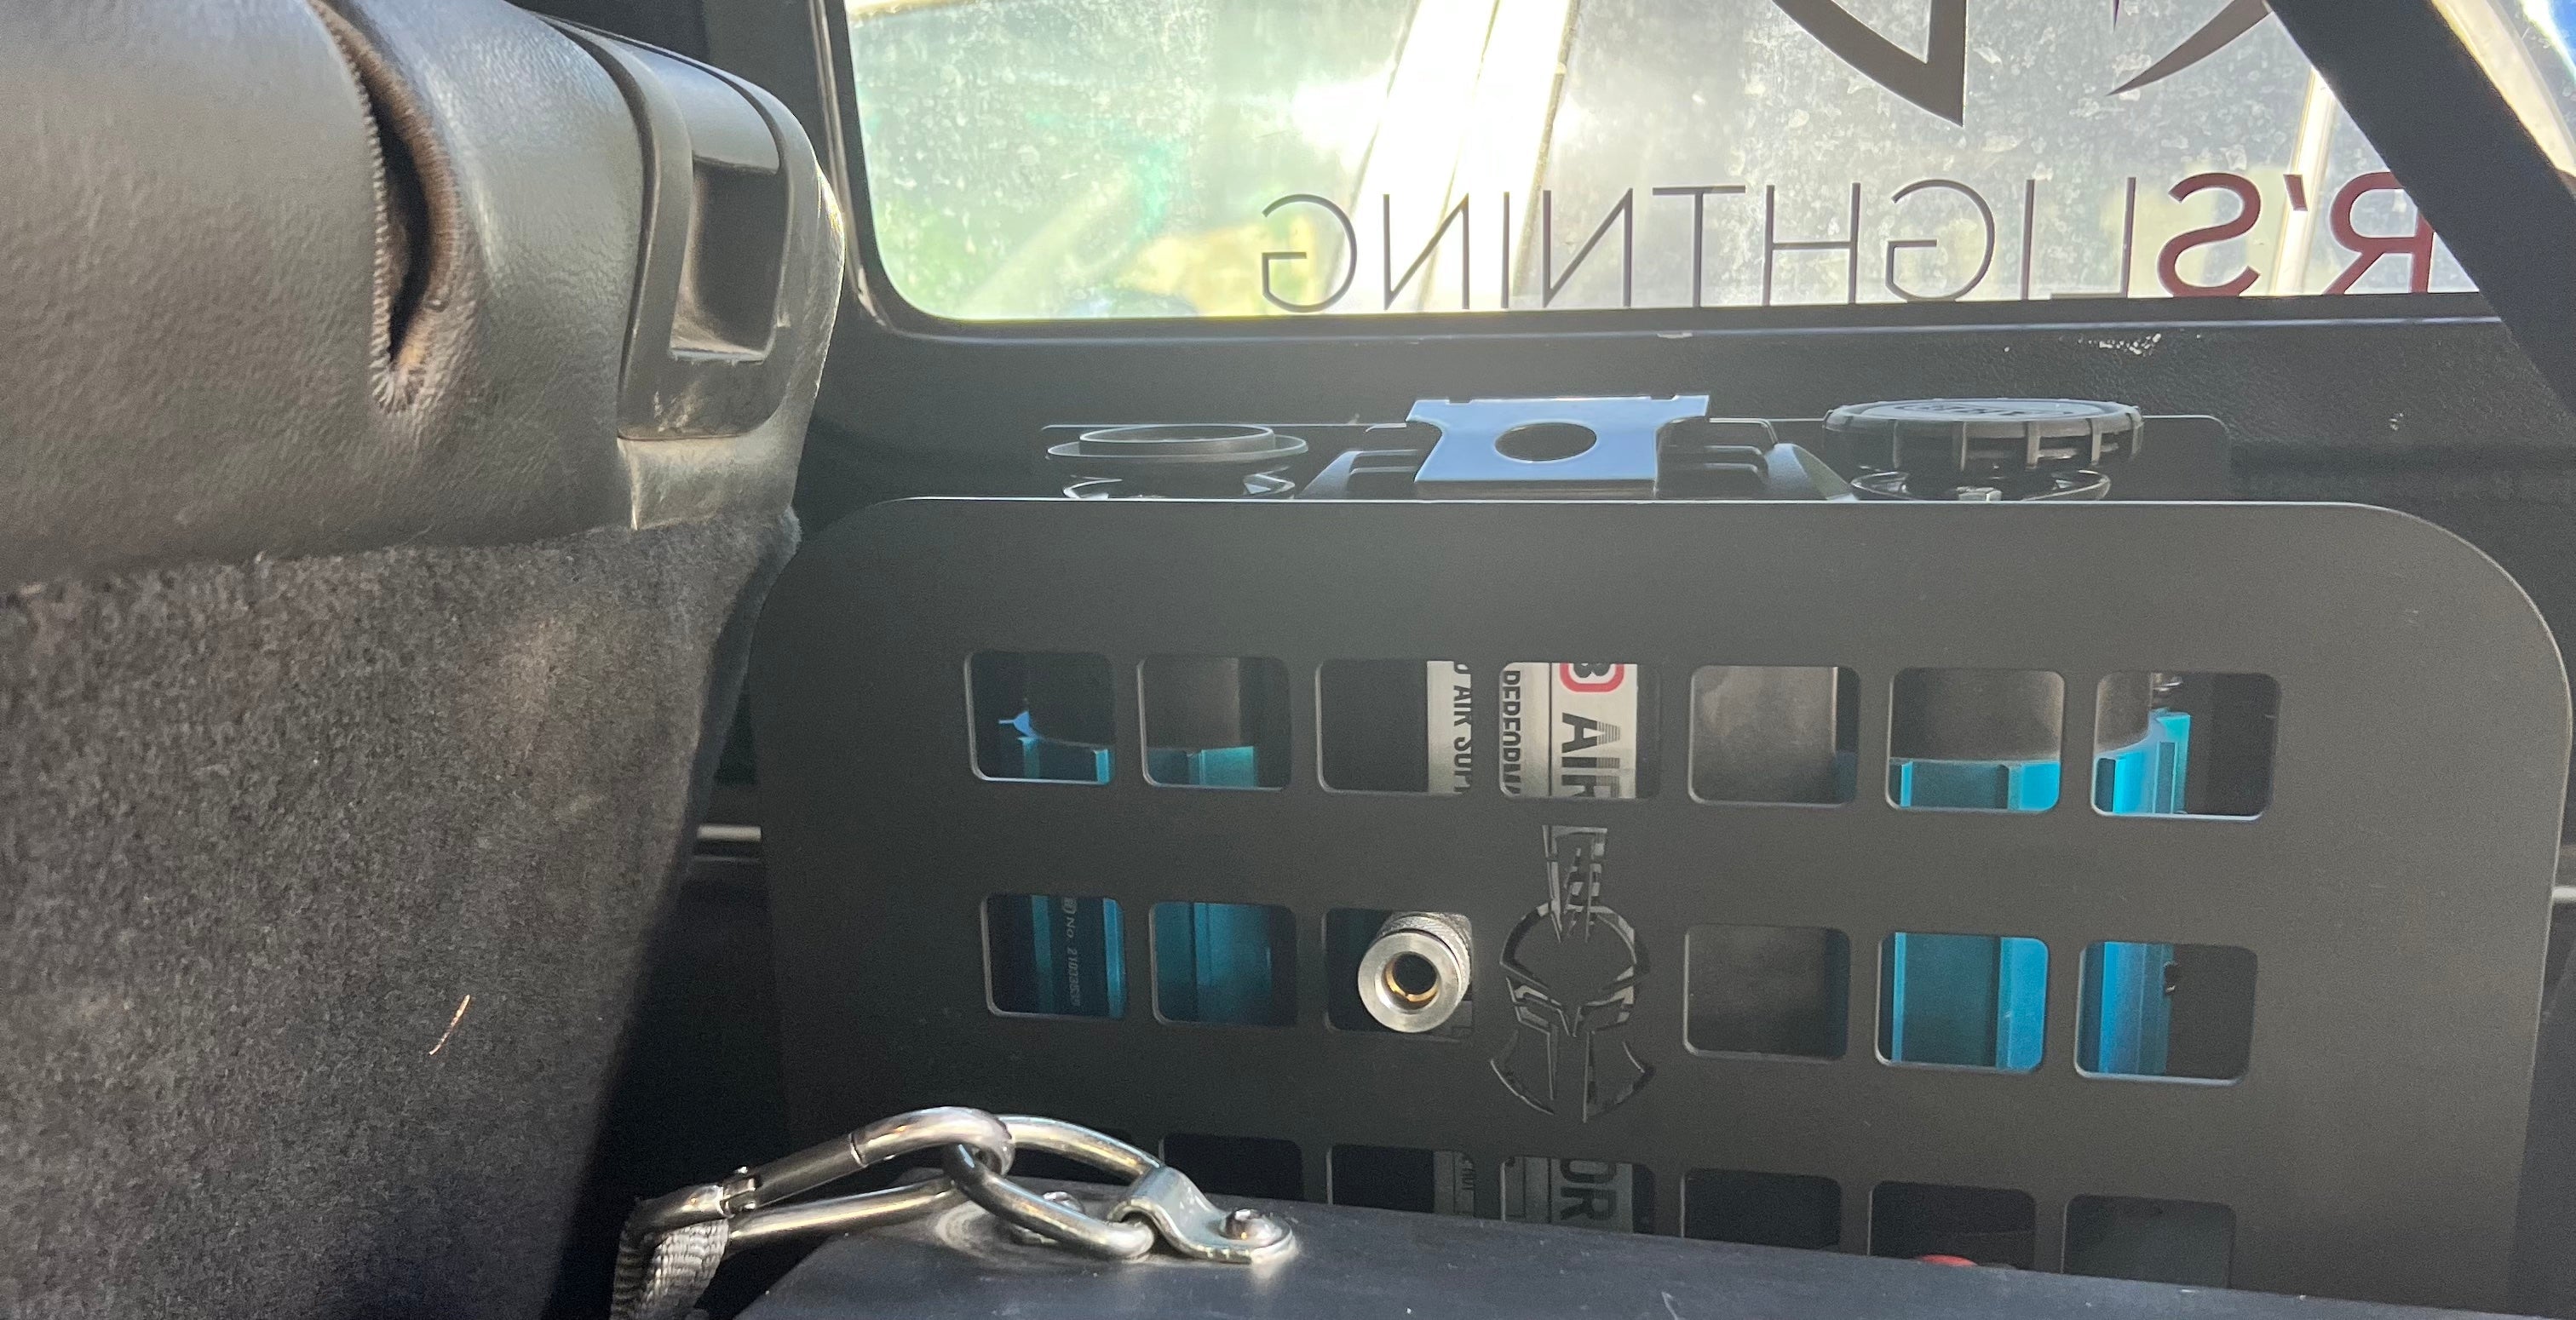 Thor's Lightning Refuge MOLLE Portable Air Compressor Mount for Jeep Wrangler JKU 2007-2018 - Demo   5